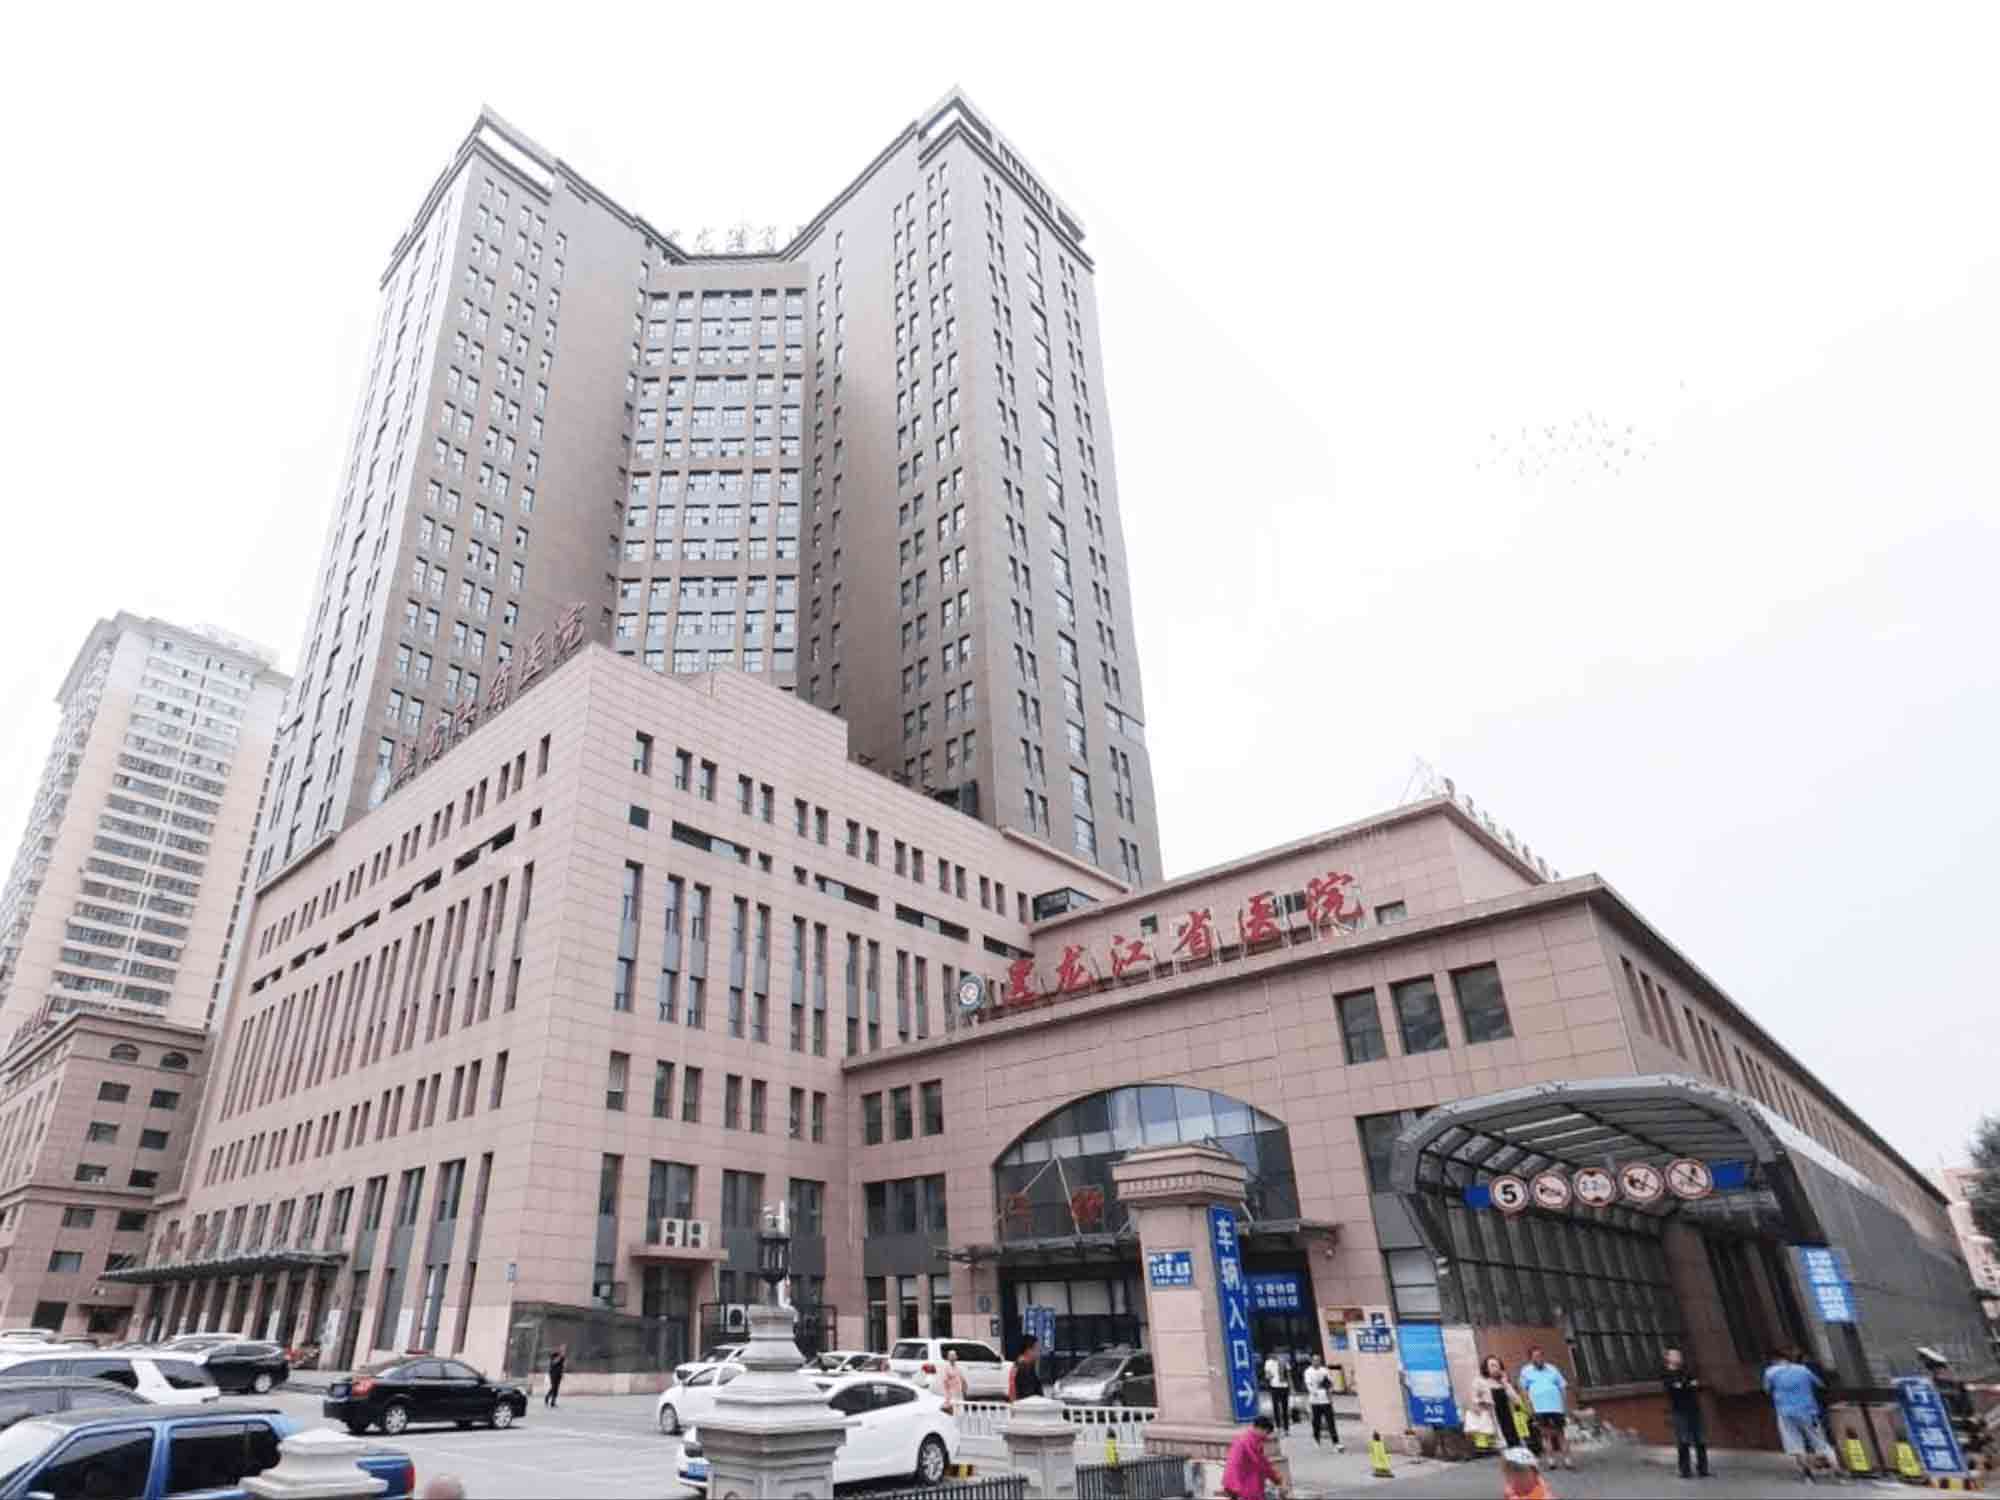 黑龙江省医院体检中心